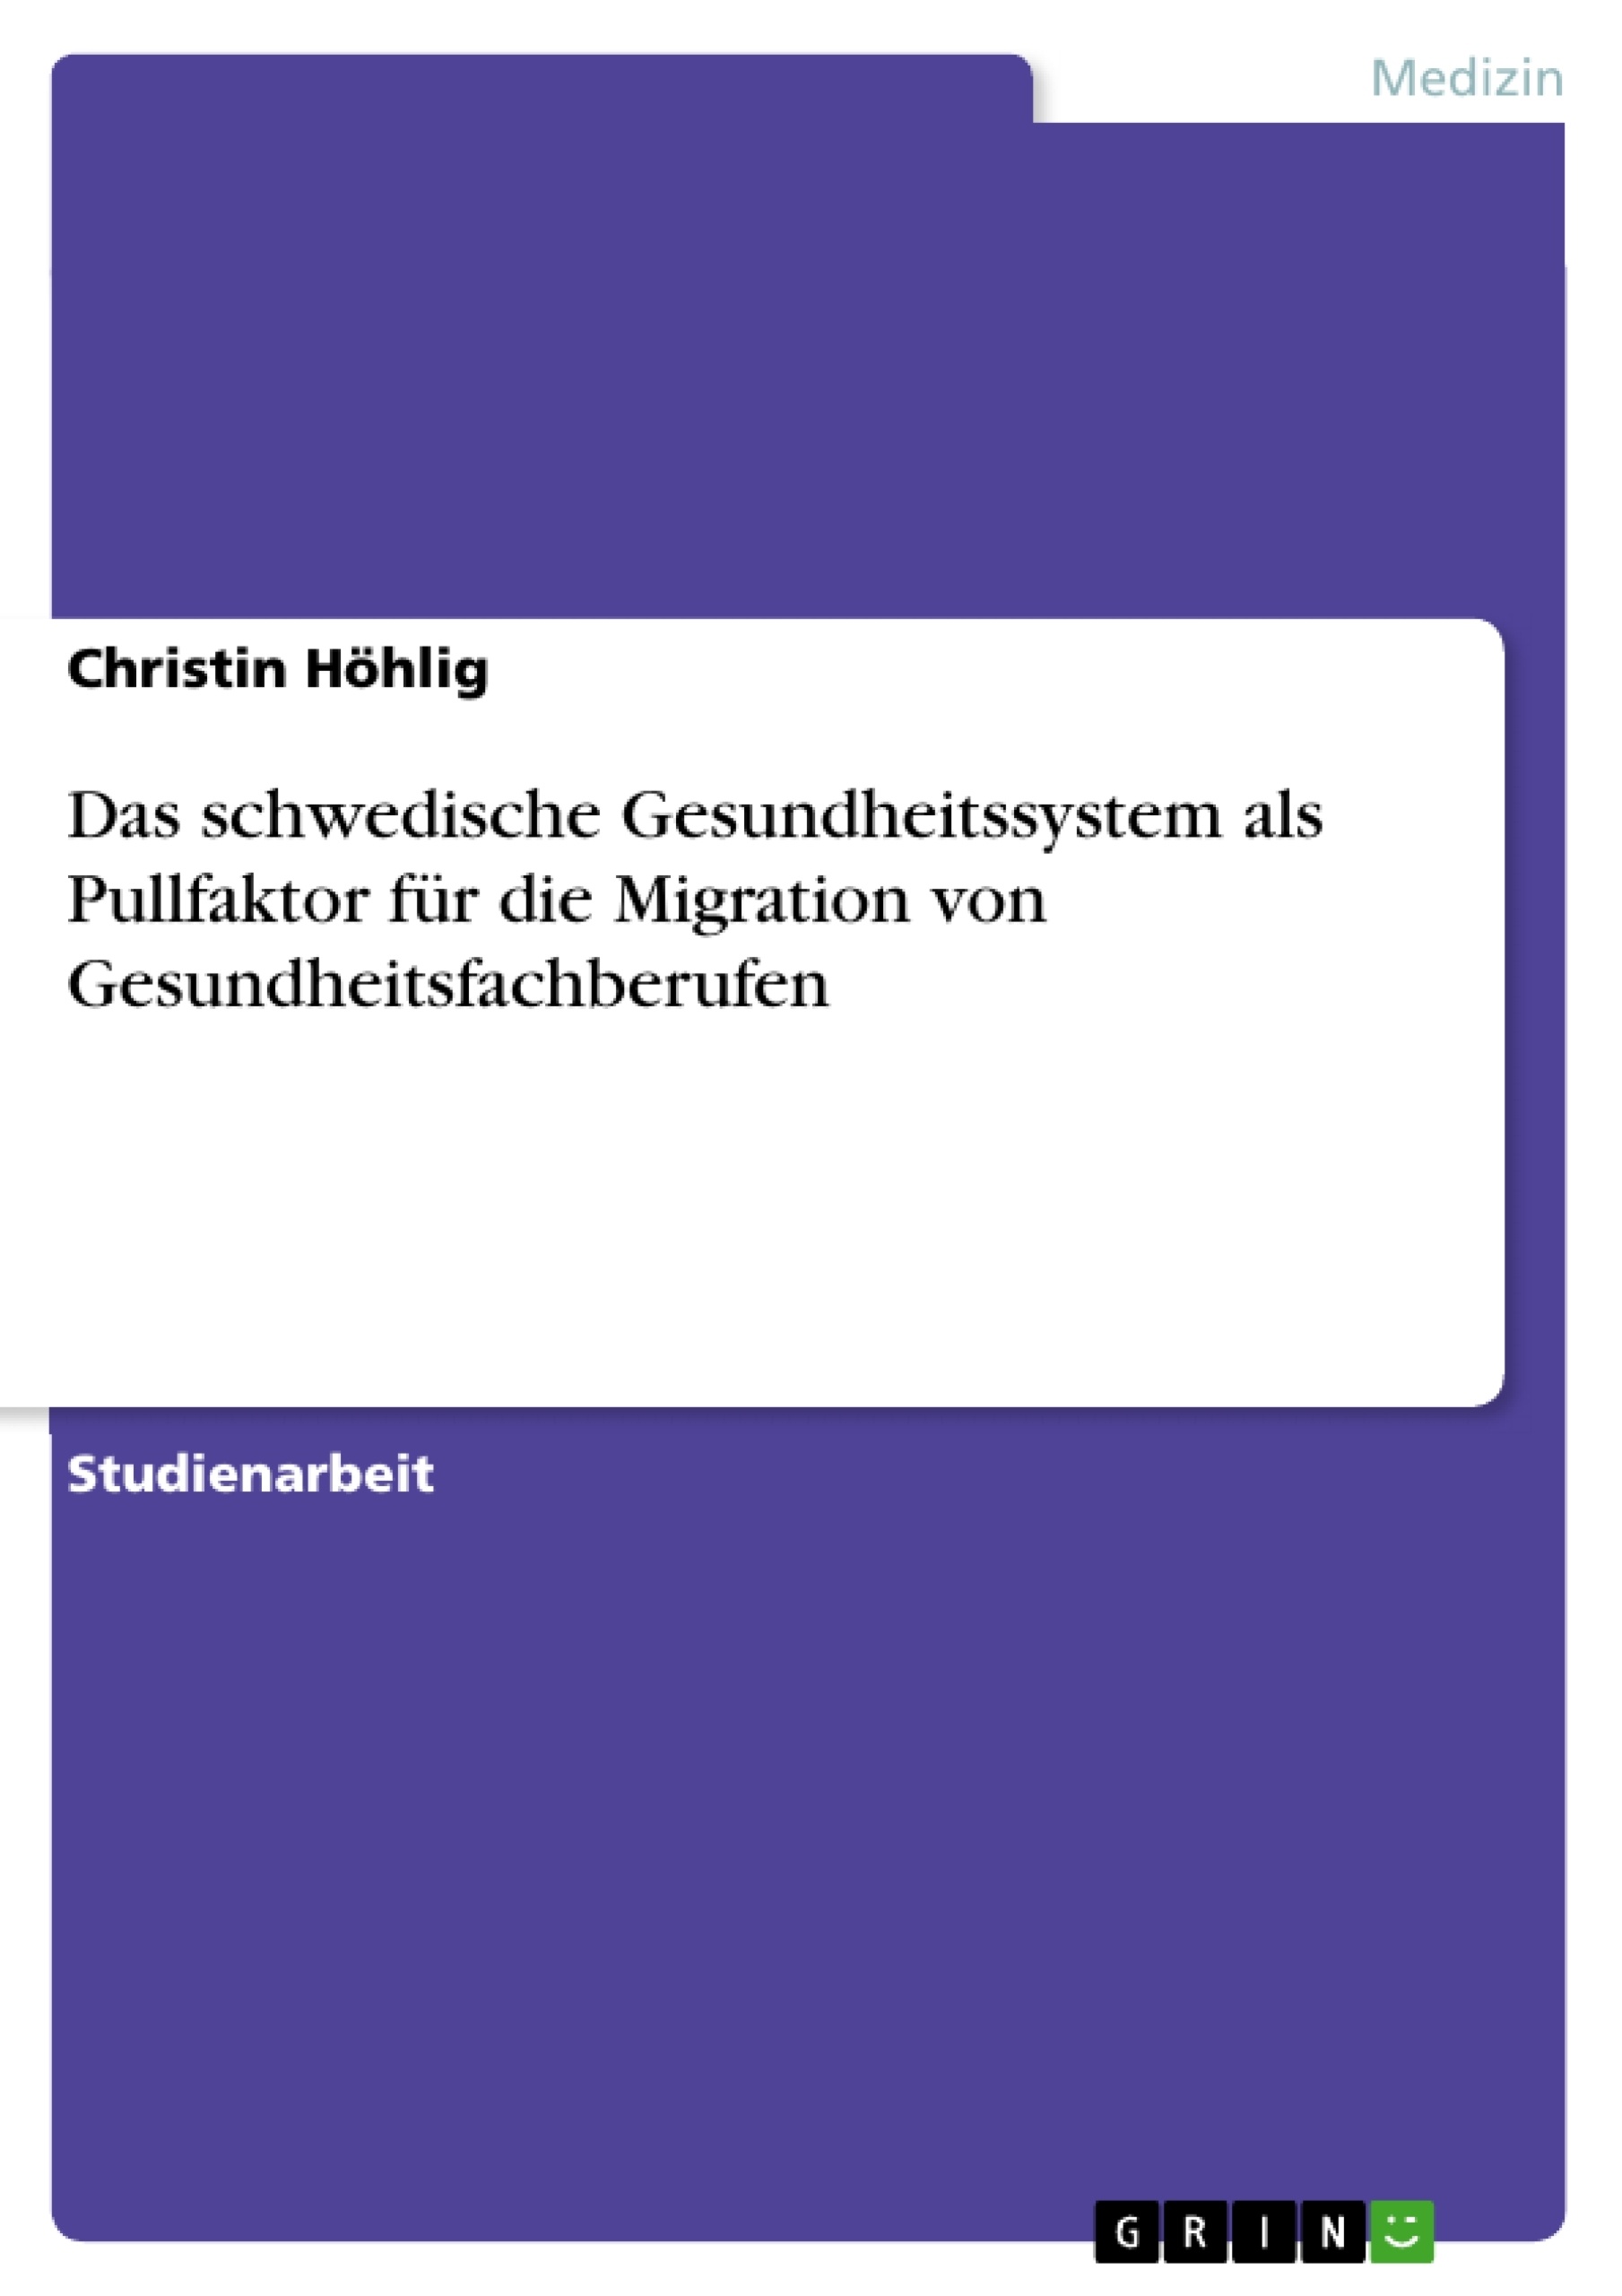 Title: Das schwedische Gesundheitssystem als Pullfaktor für die Migration von Gesundheitsfachberufen